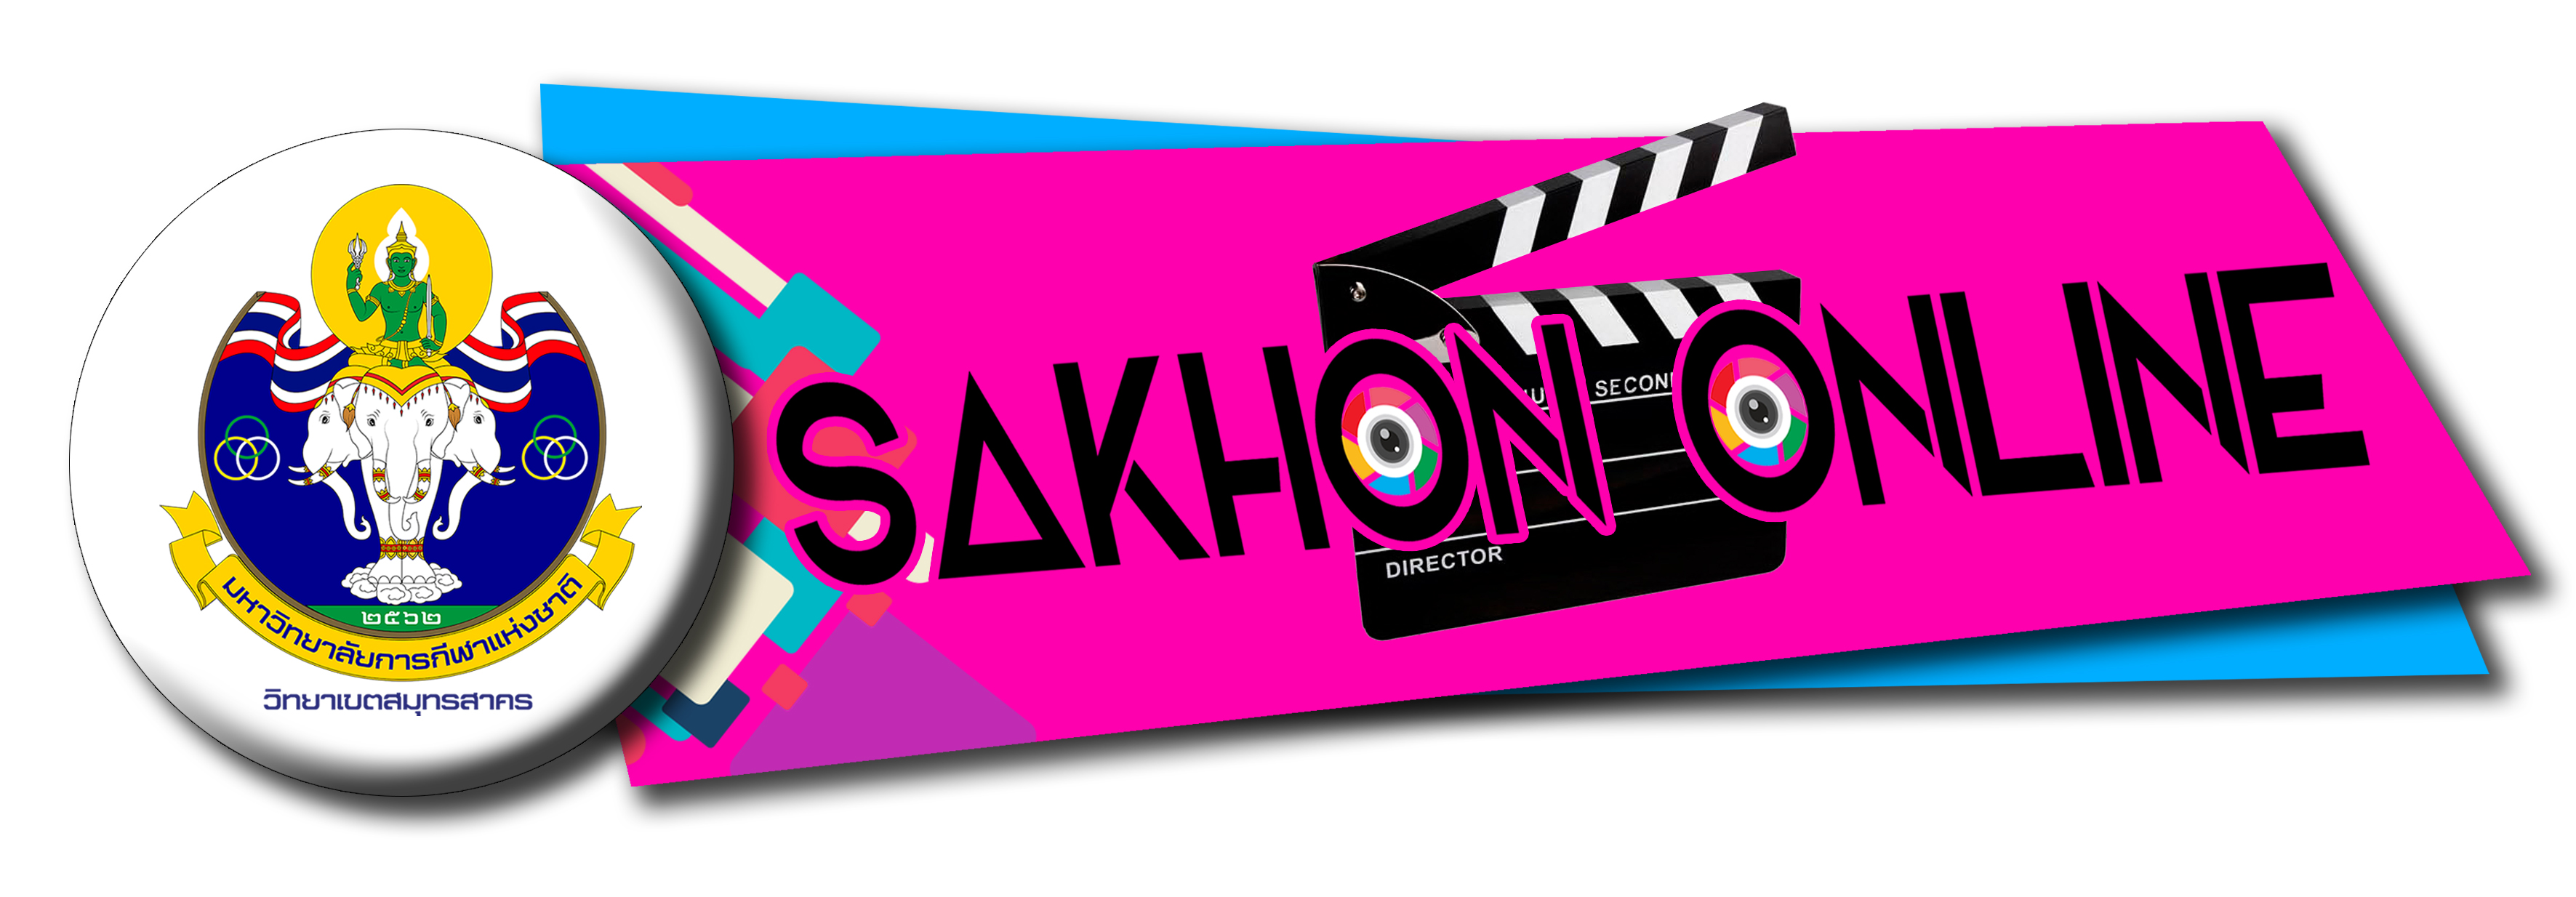 Logo sakhon online 1